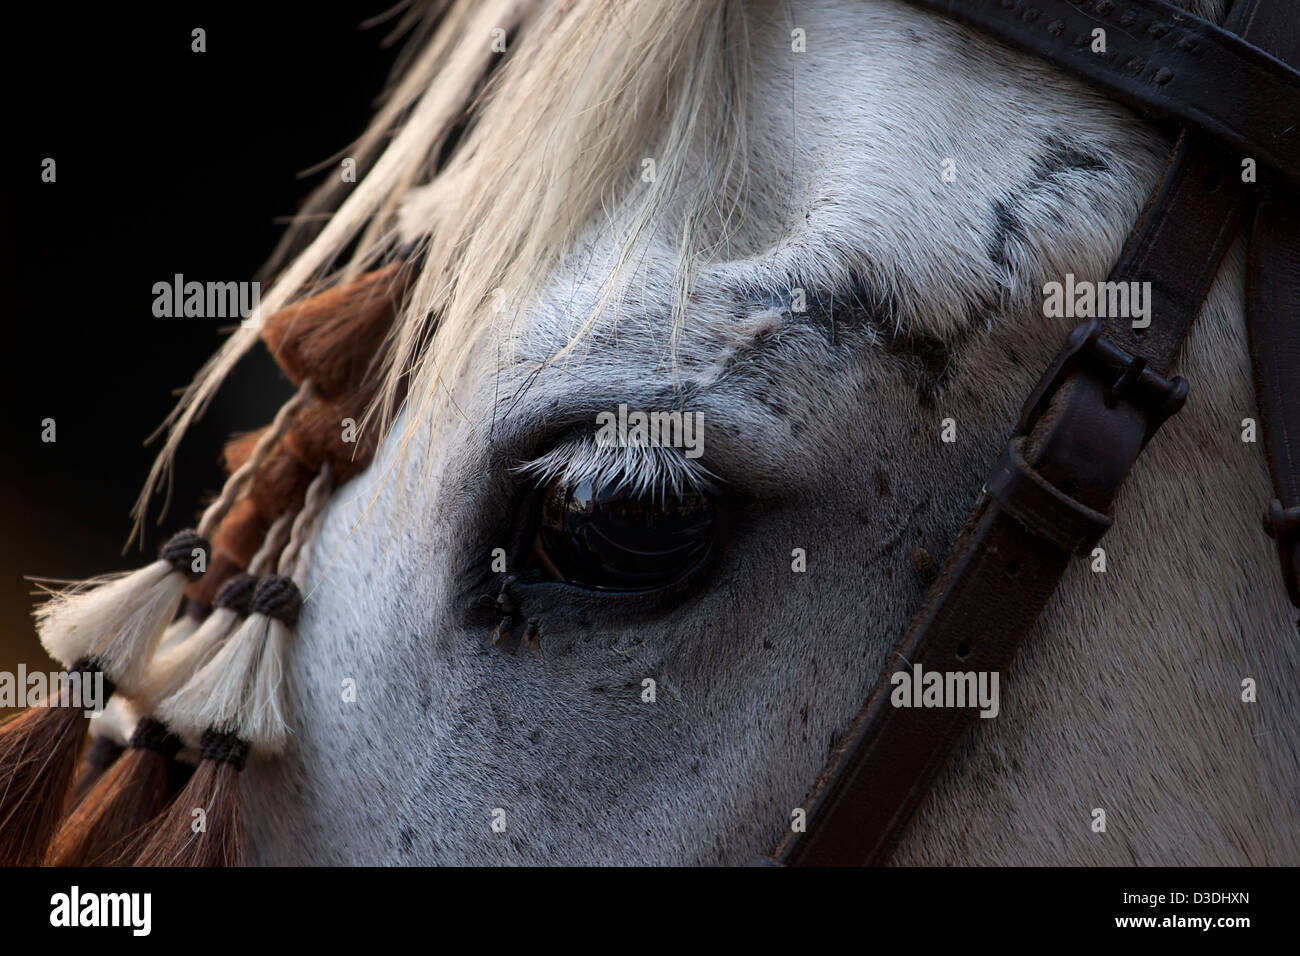 Close up of horse eye. Stock Photo